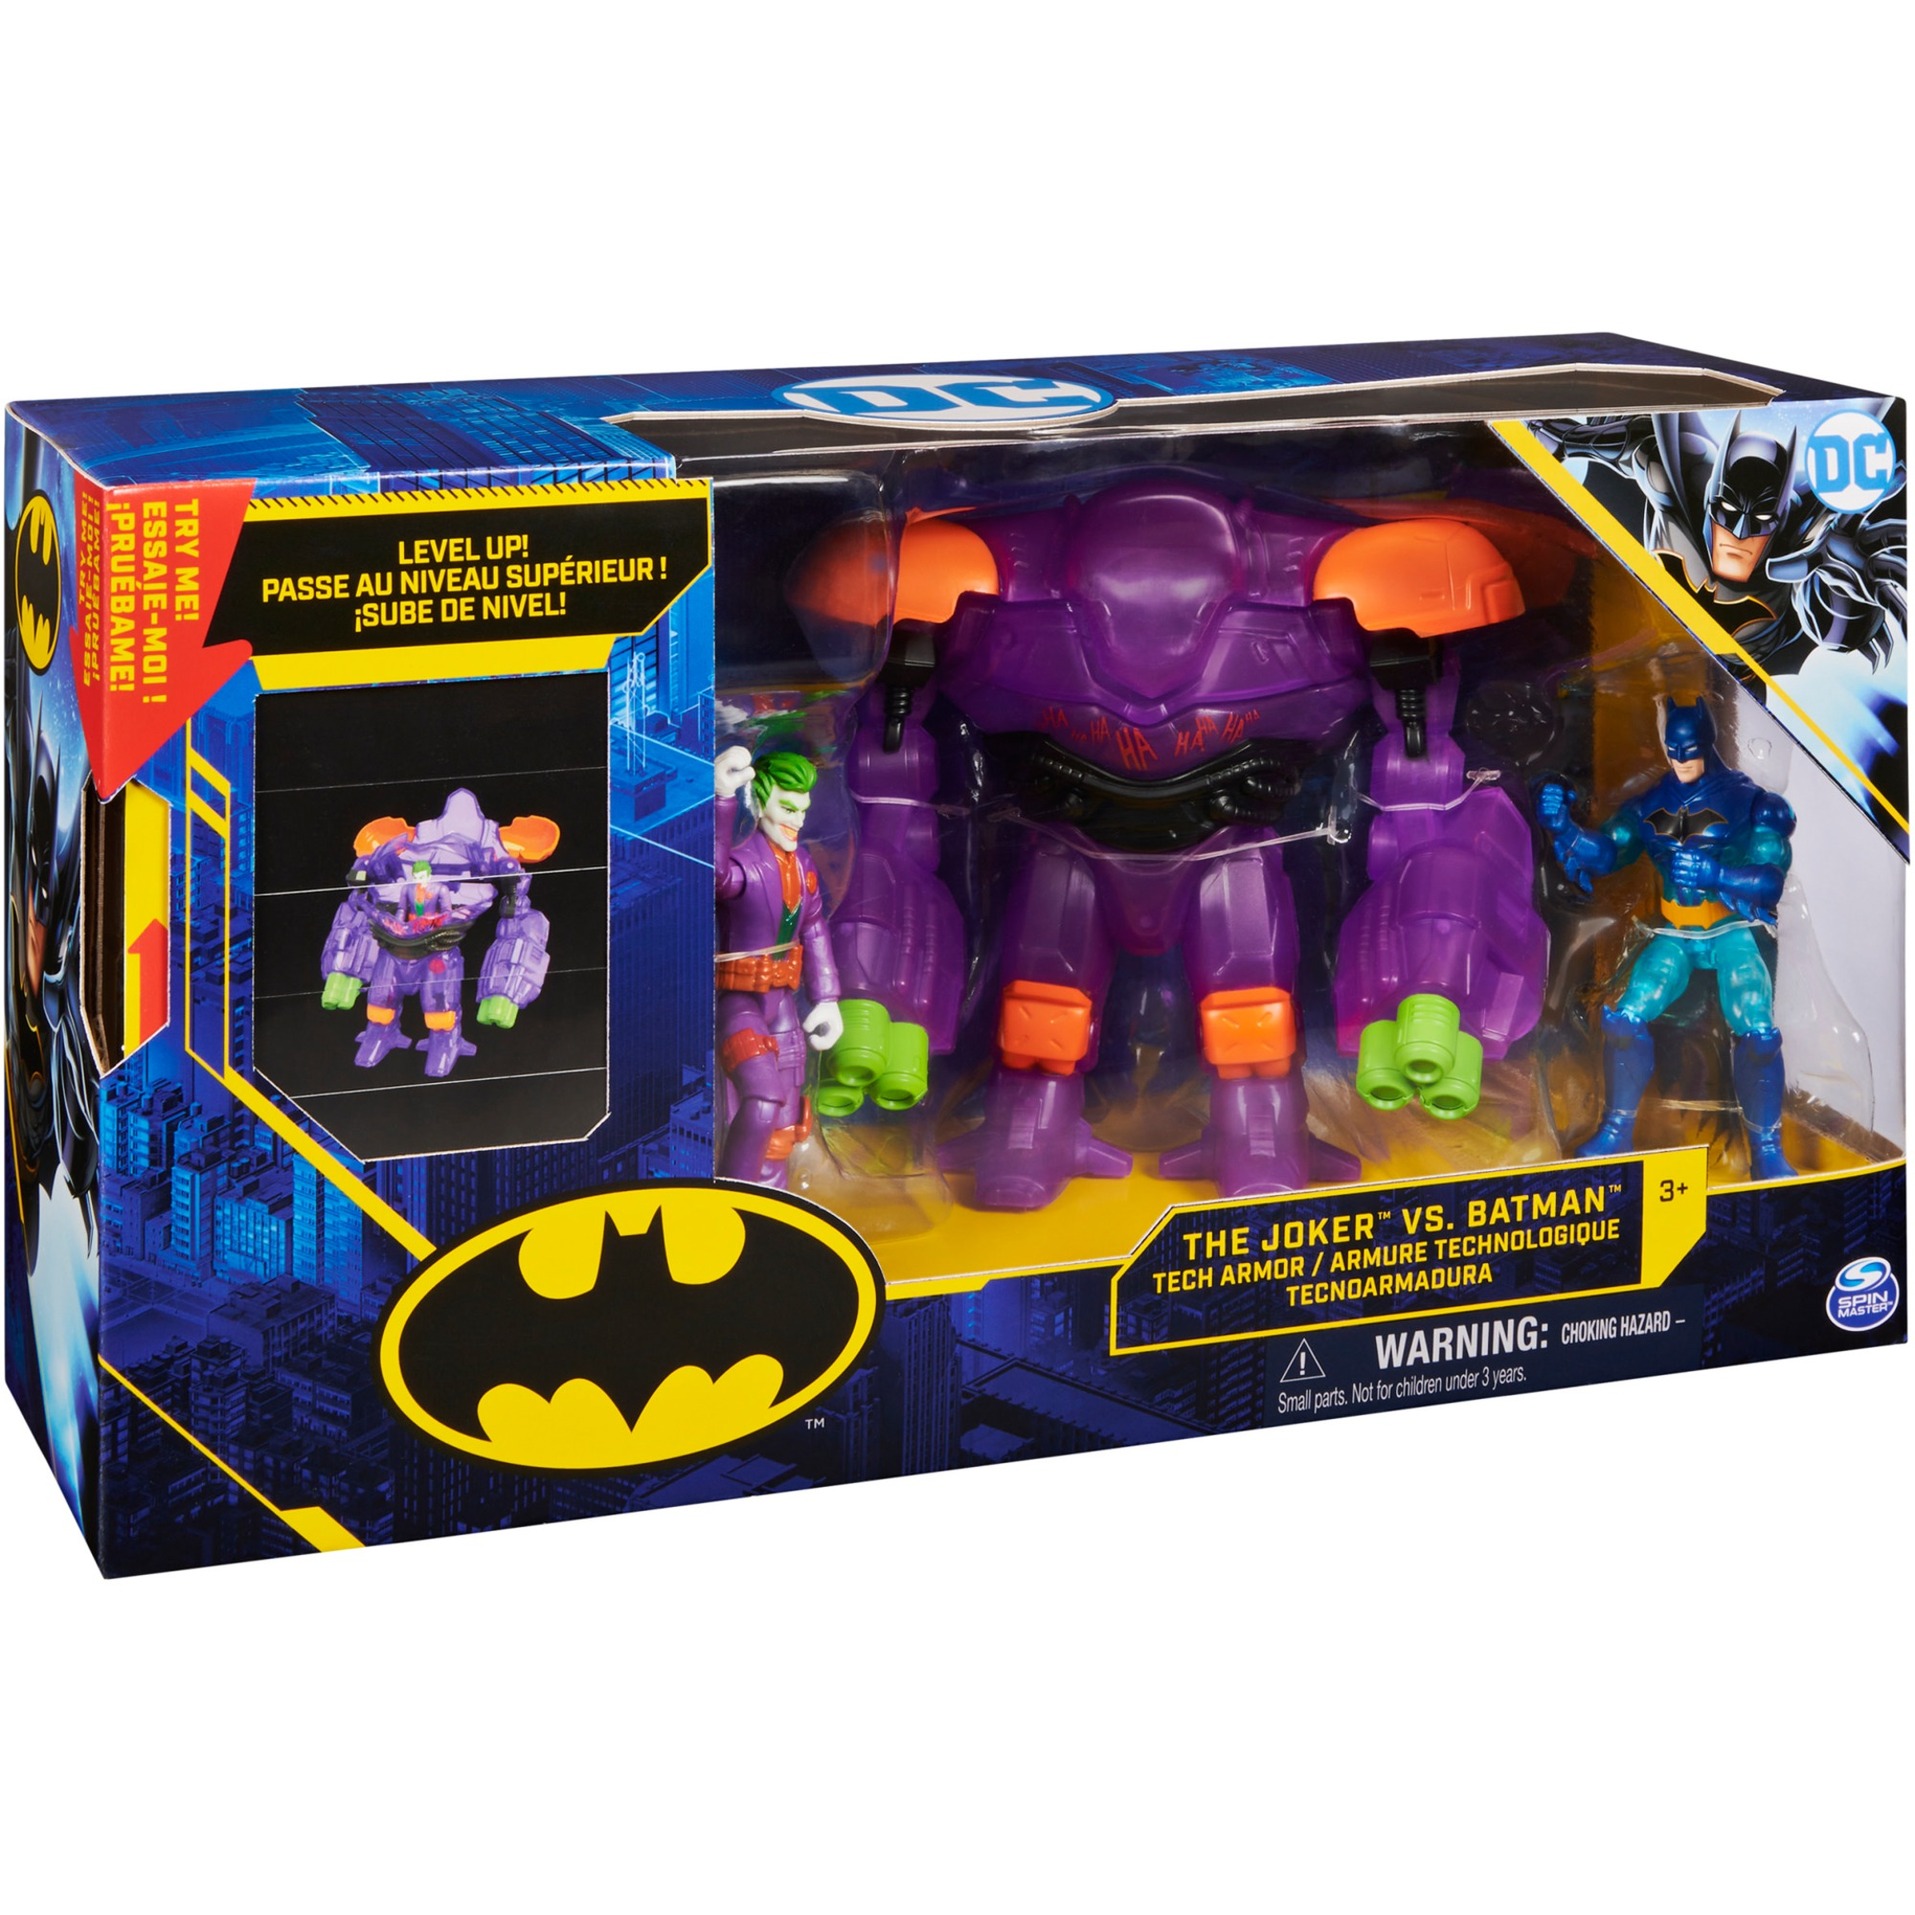 Image of Alternate - 10cm großes Batman Joker vs. Batman-Actionfiguren-Set, Spielfigur online einkaufen bei Alternate